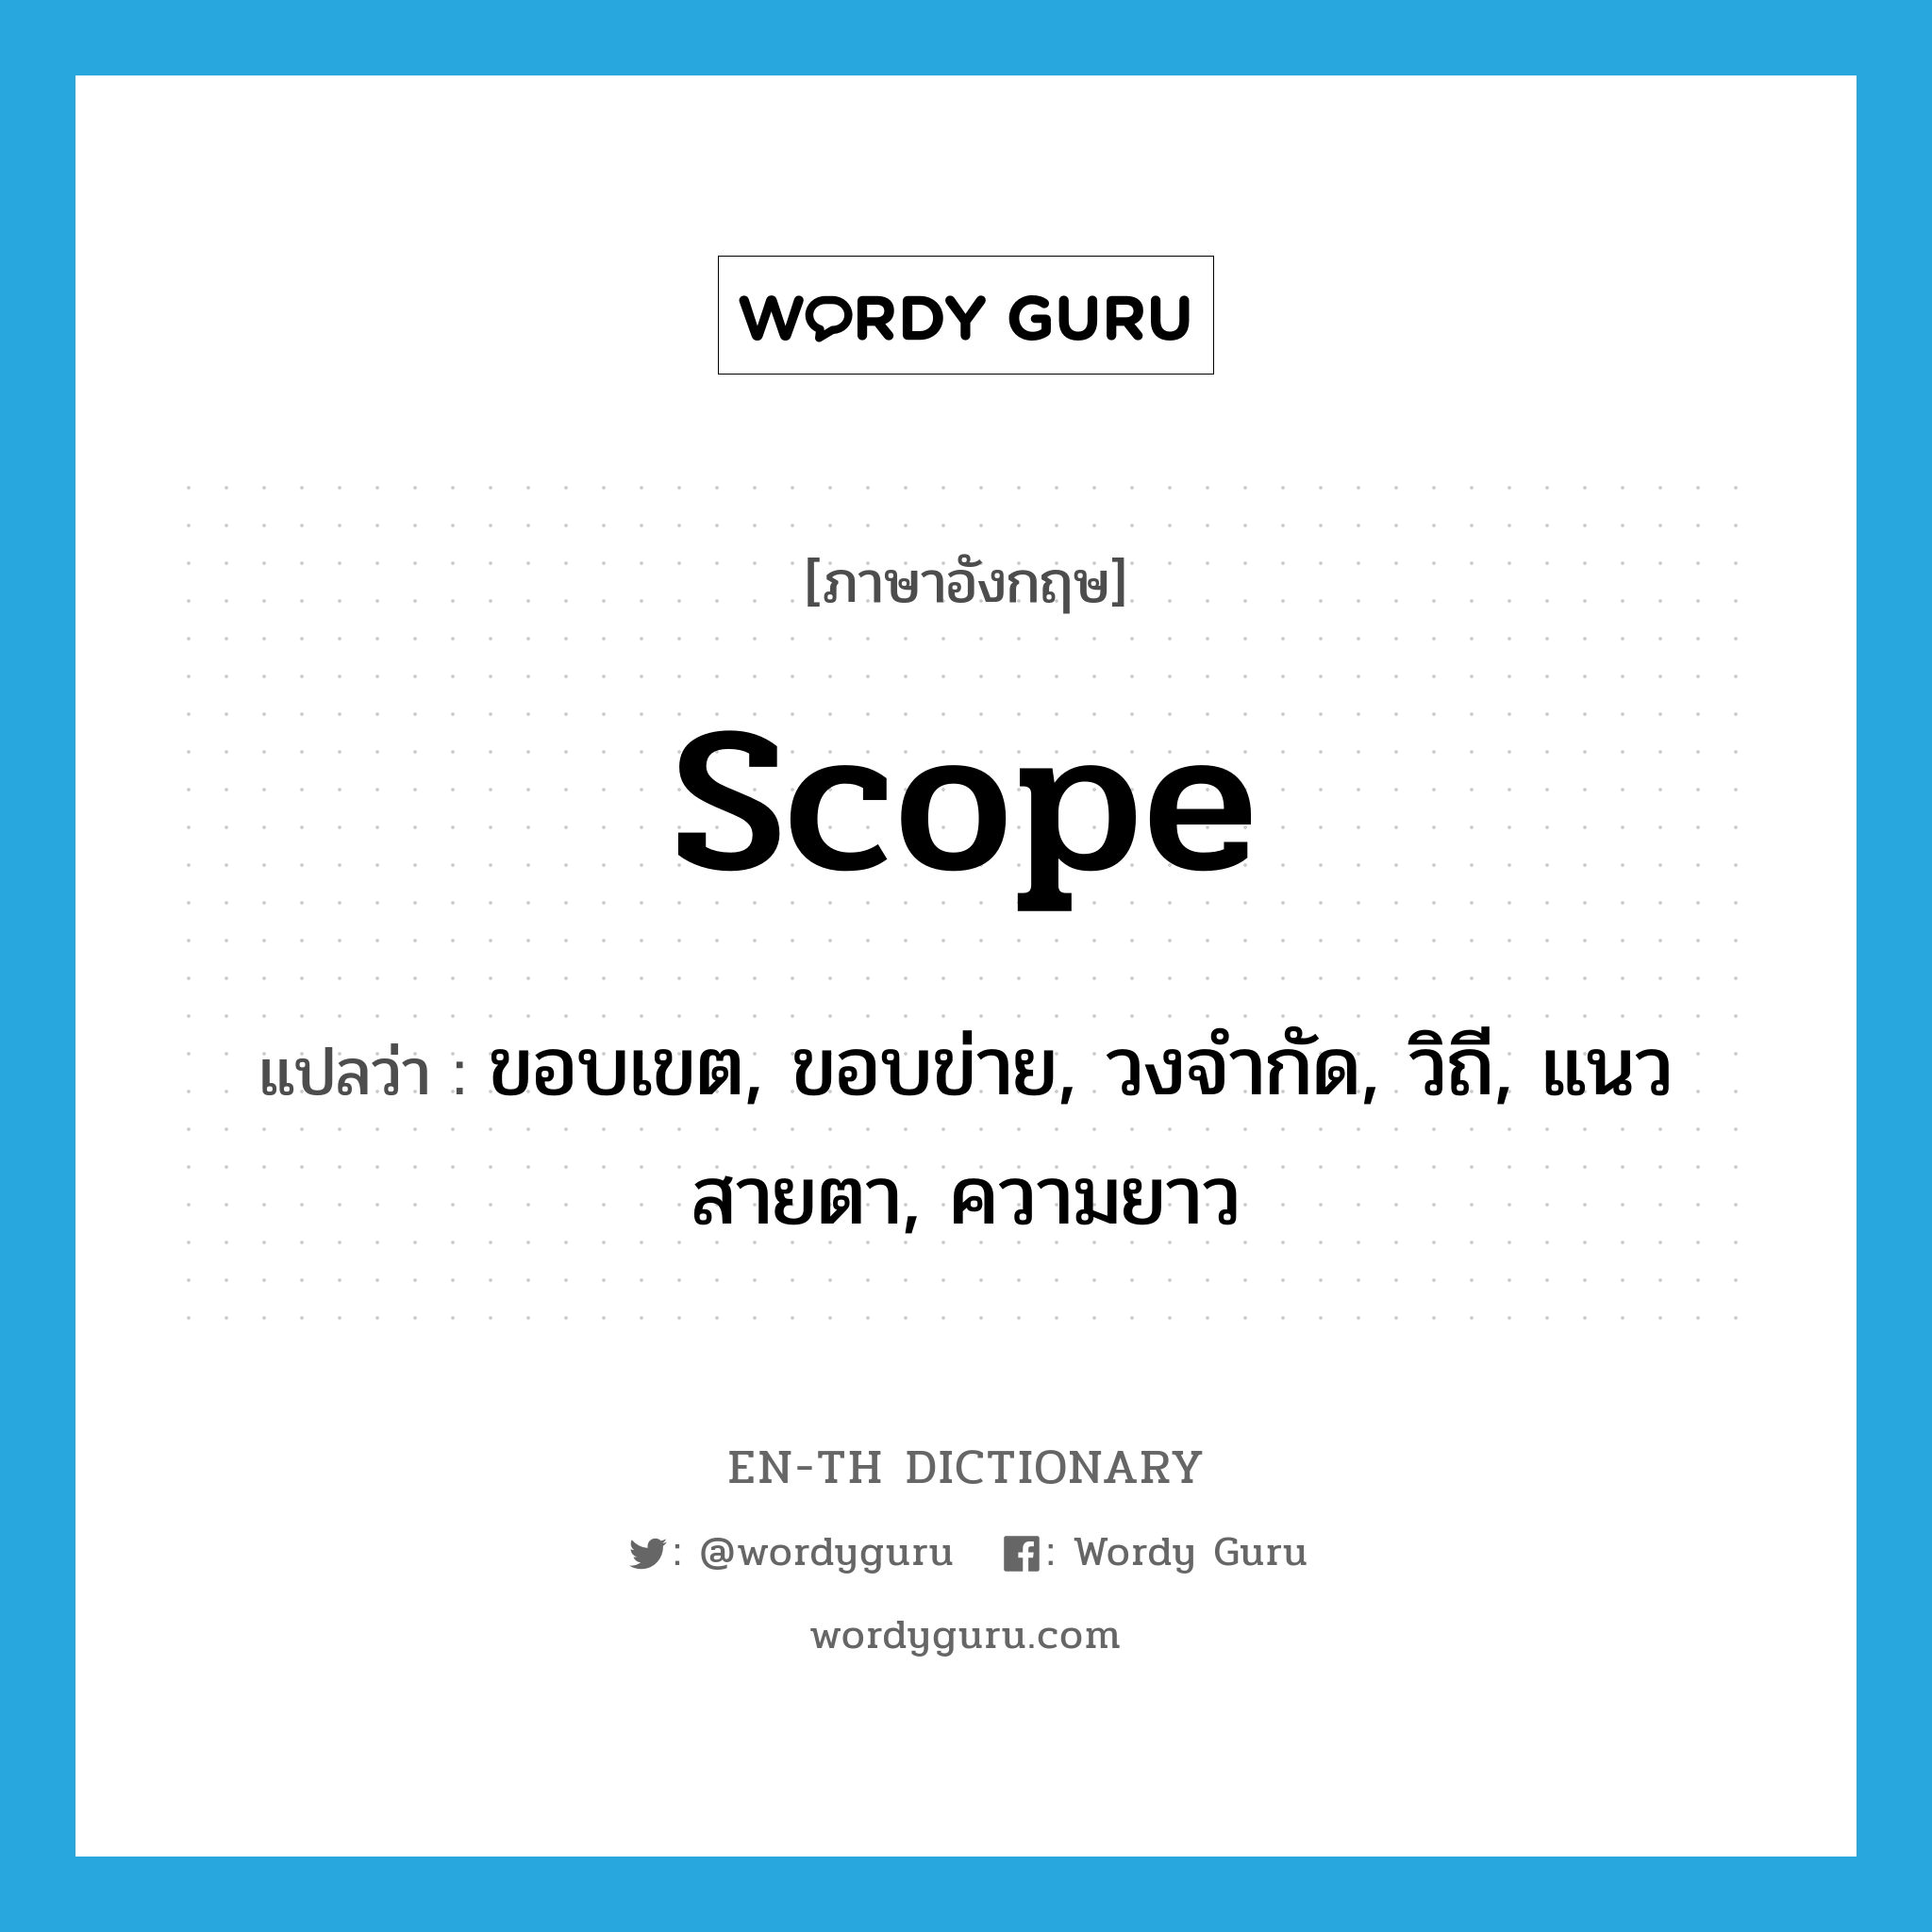 scope แปลว่า?, คำศัพท์ภาษาอังกฤษ scope แปลว่า ขอบเขต, ขอบข่าย, วงจำกัด, วิถี, แนวสายตา, ความยาว ประเภท N หมวด N